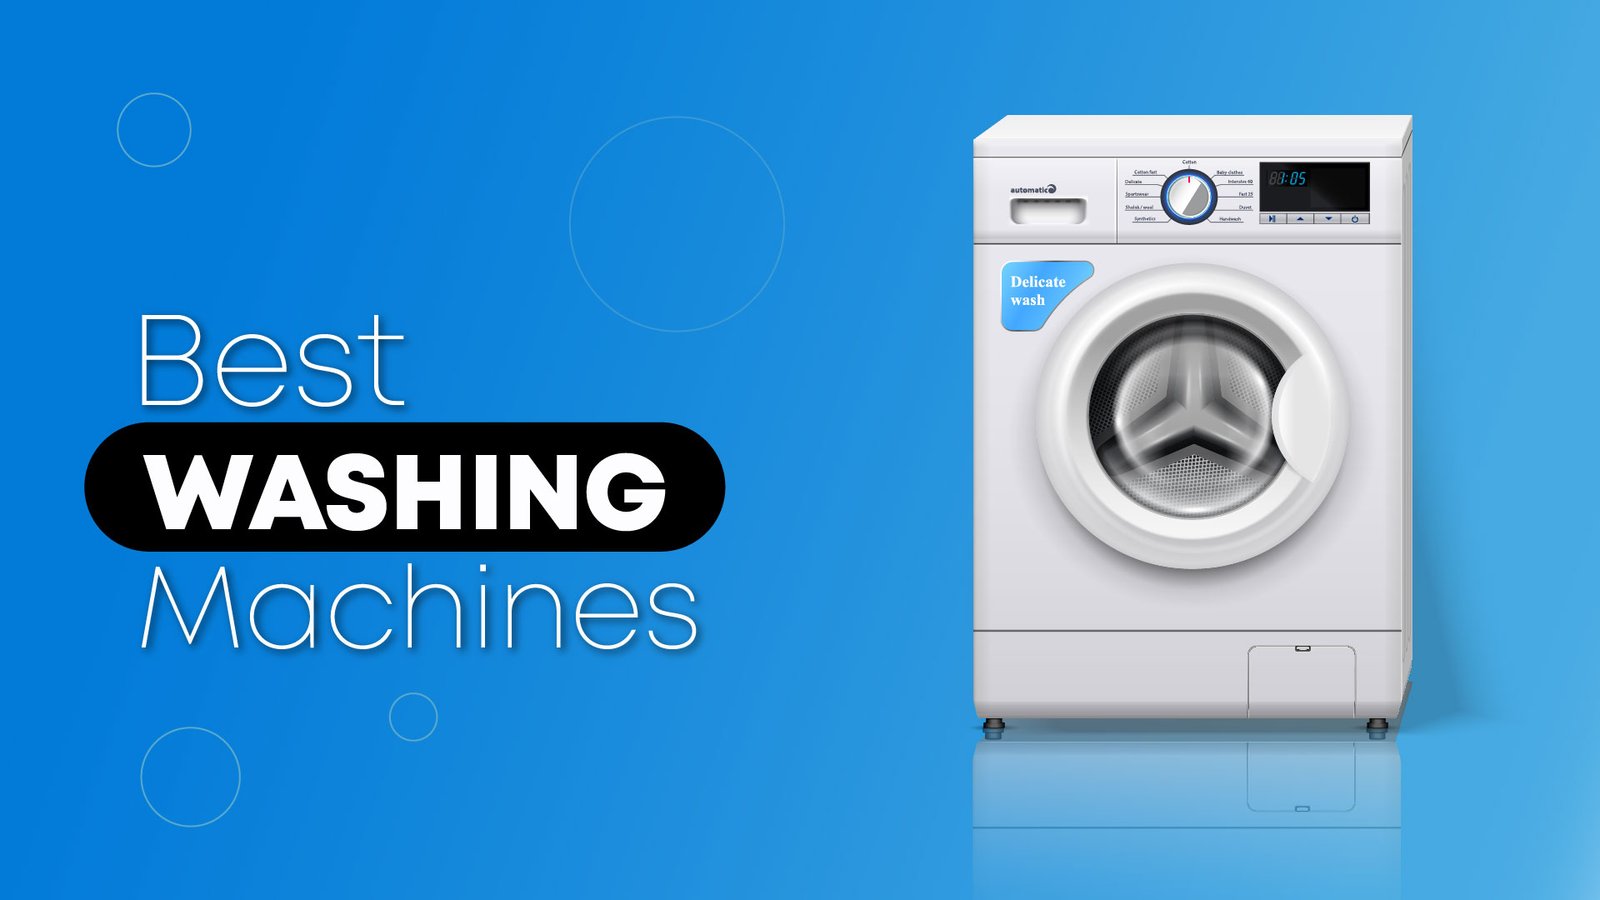 Best Washing Machines 01 1 